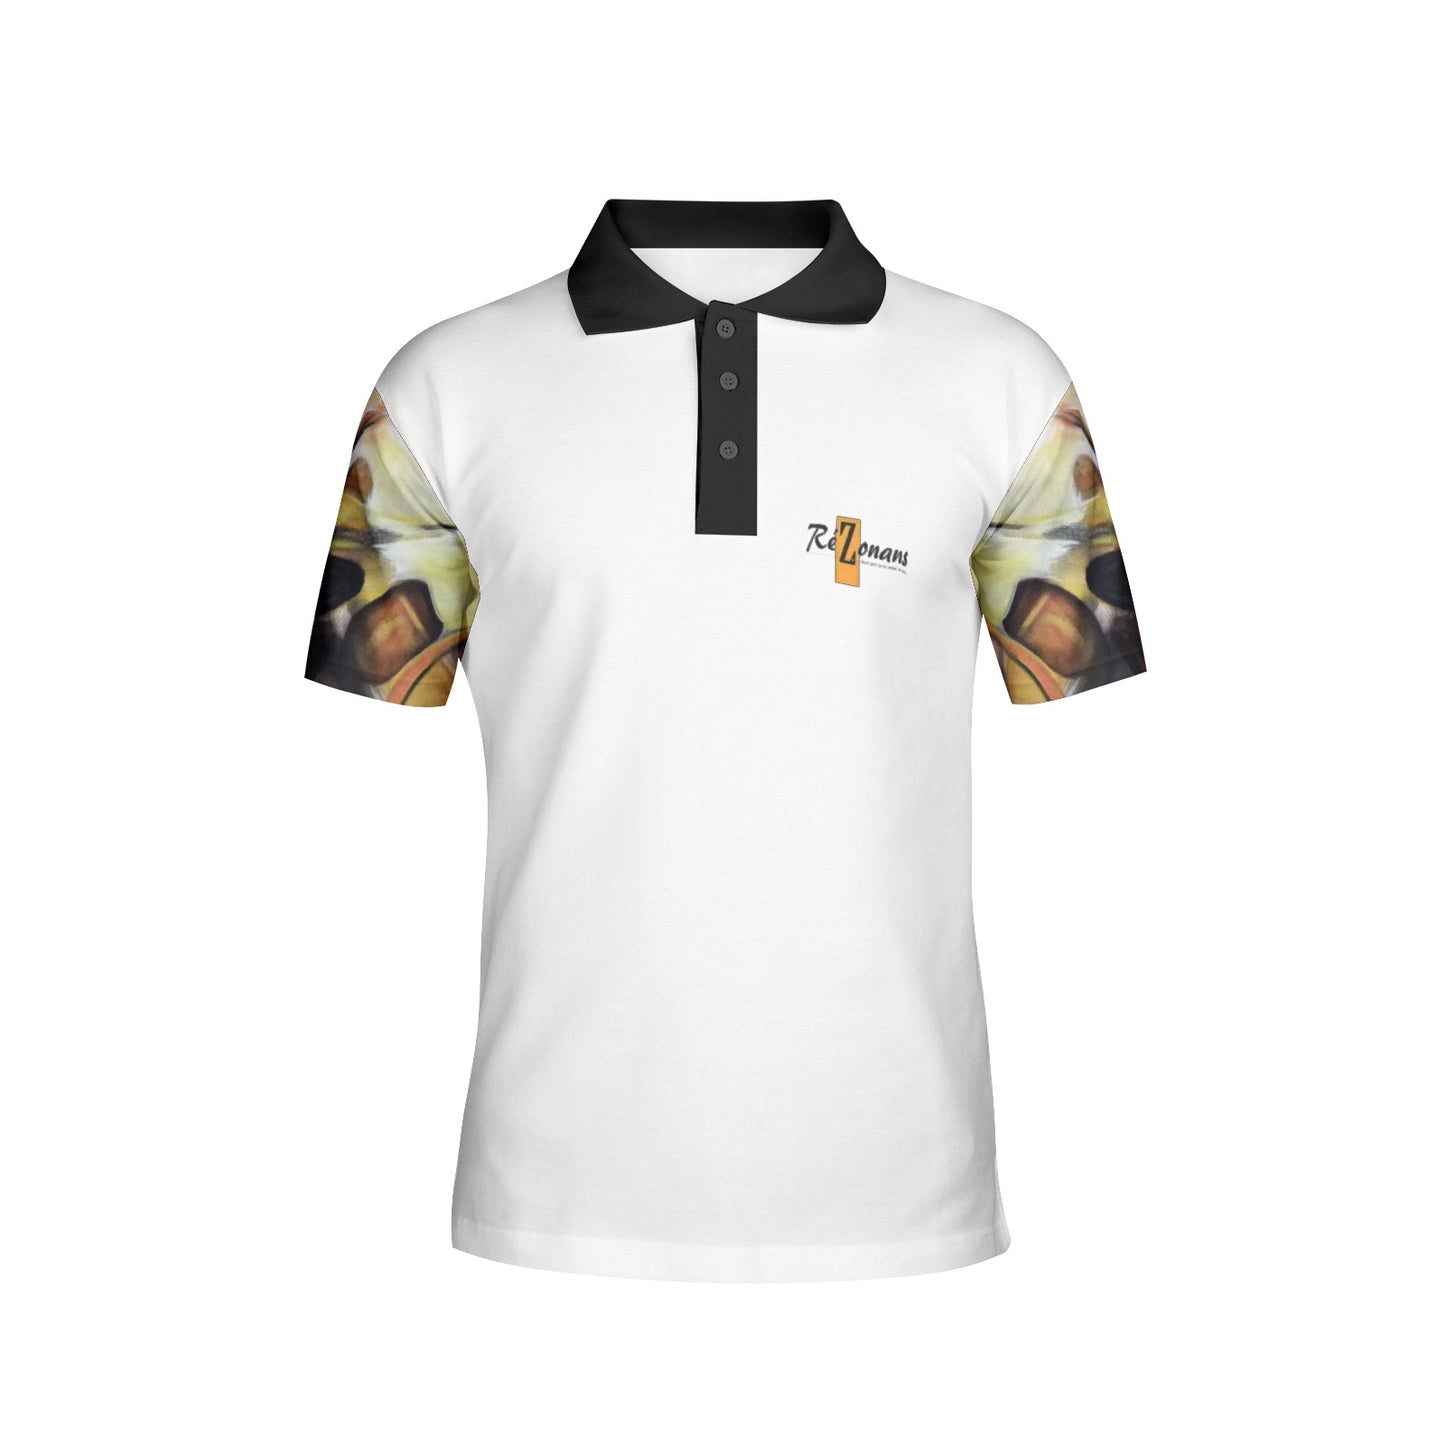 "Lespwa" collector's polo shirt